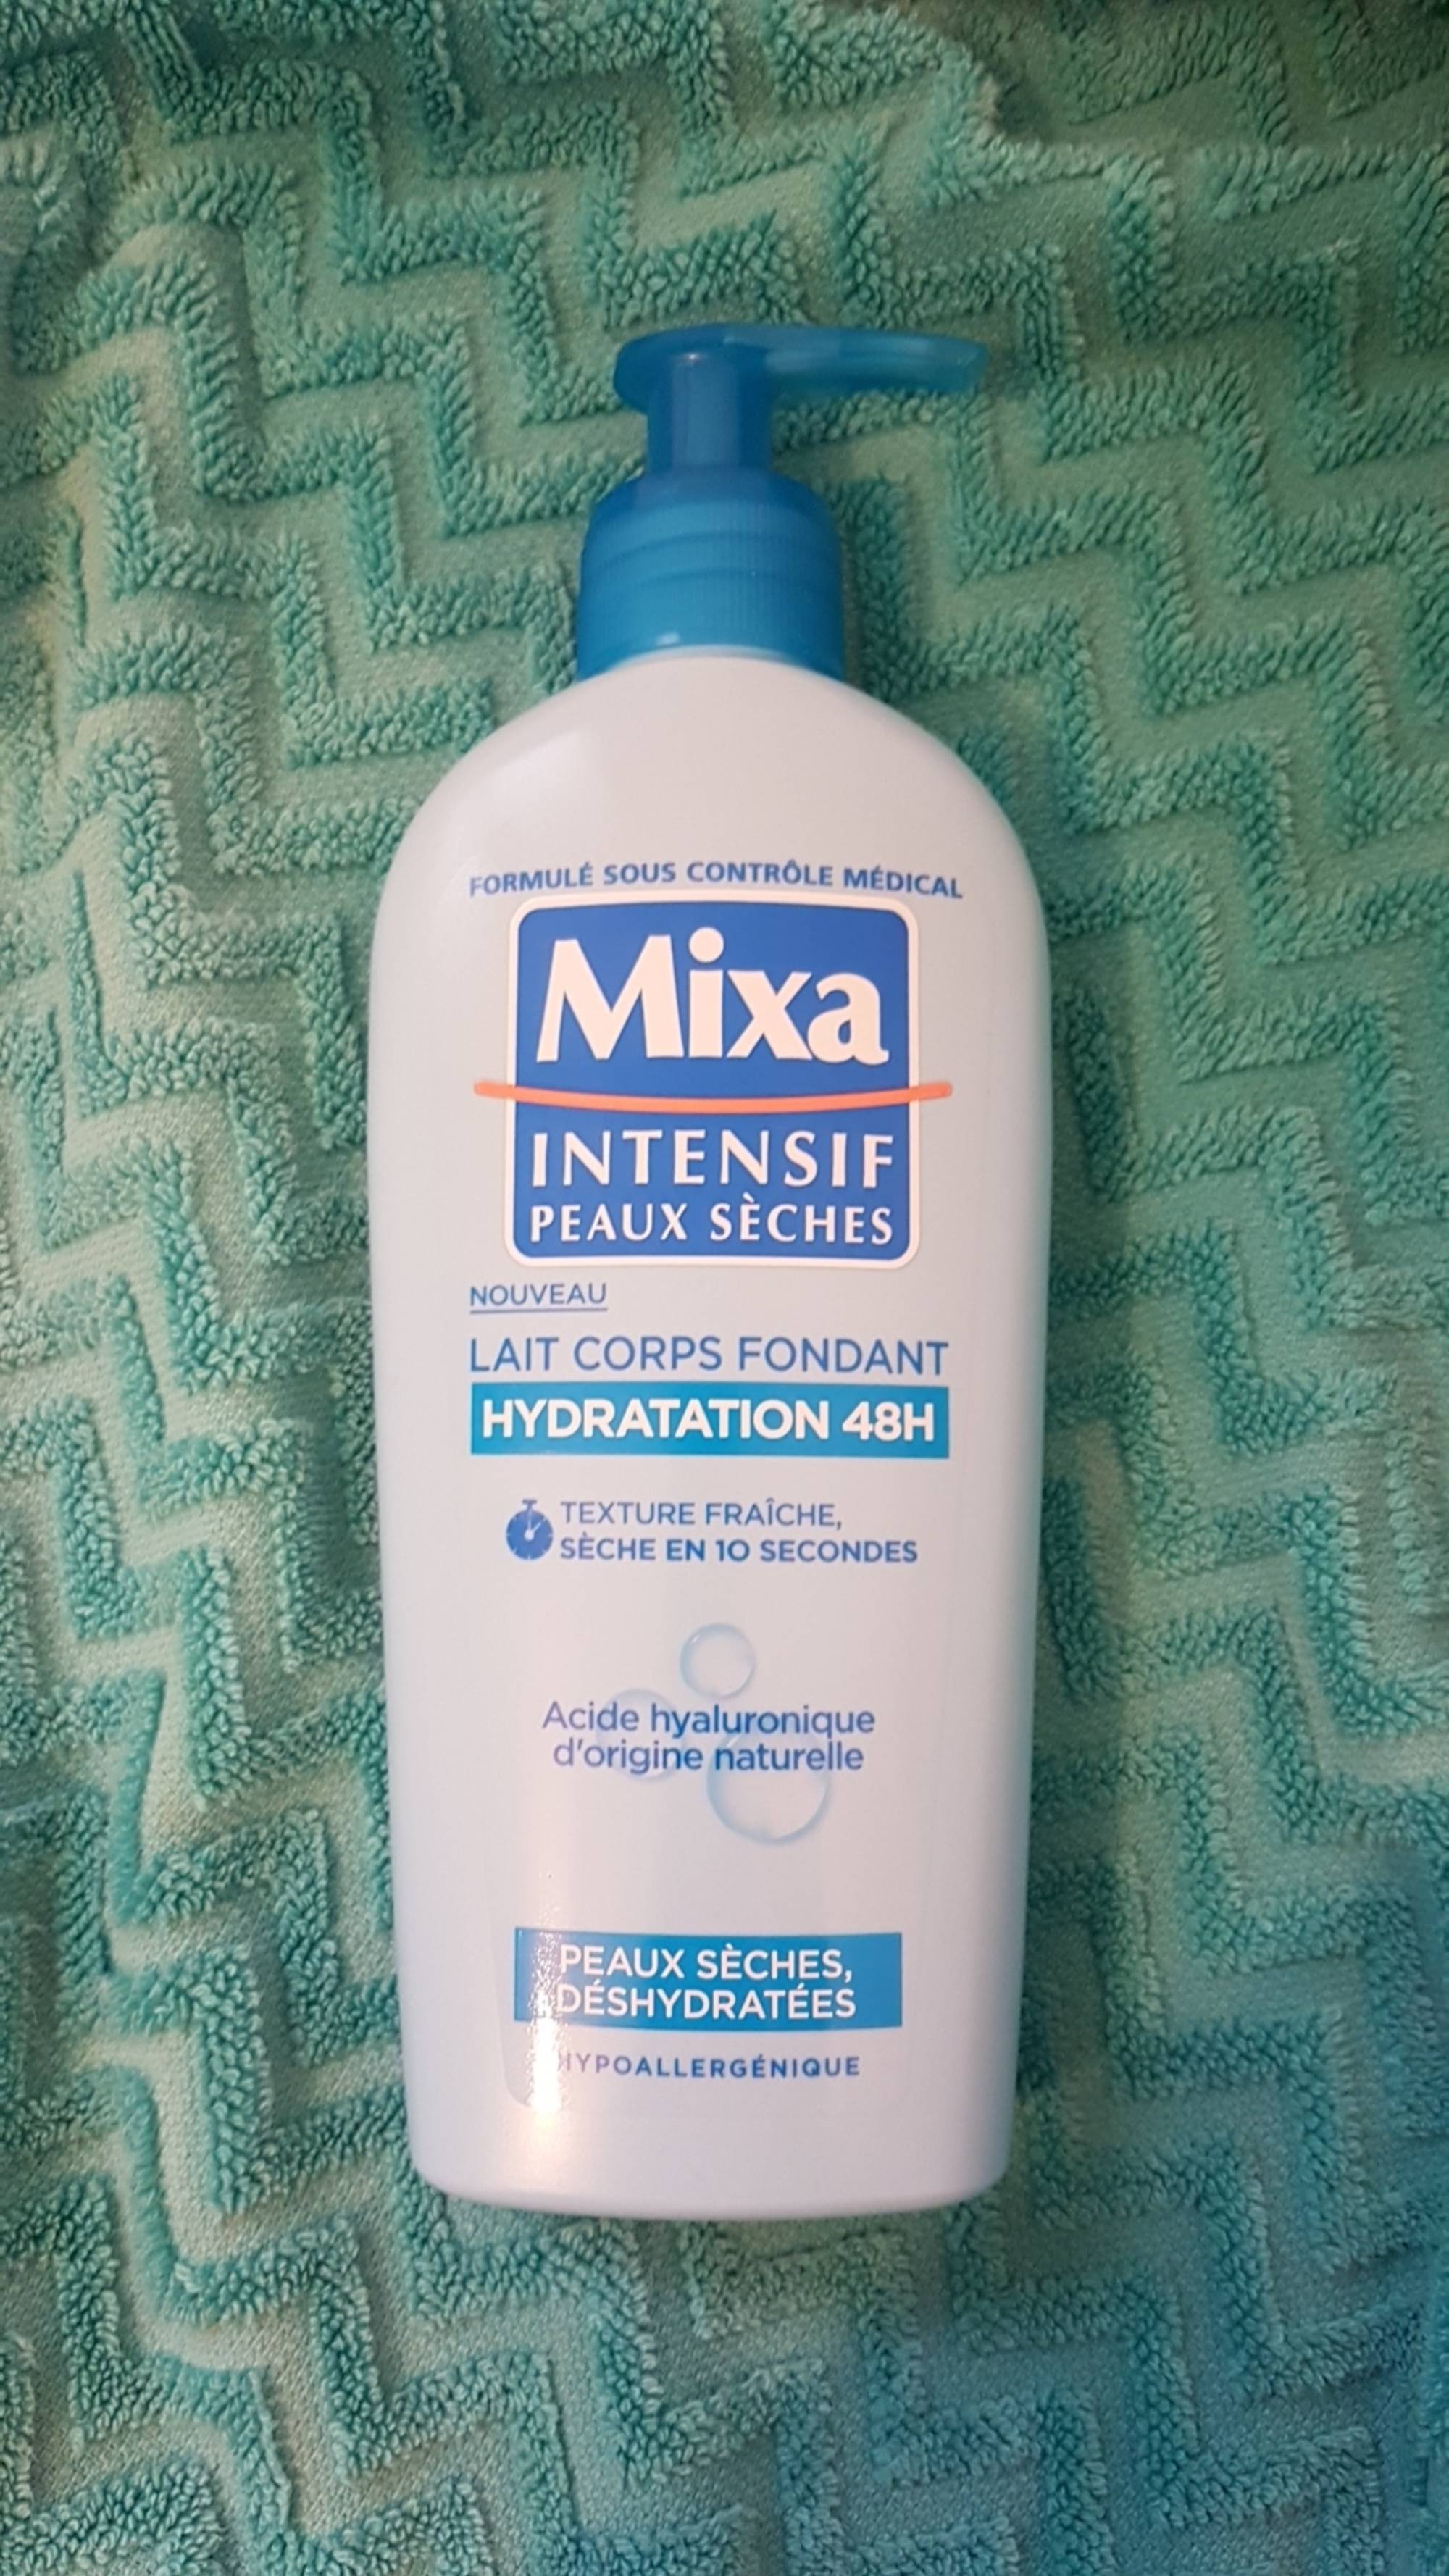 MIXA - Intensif peau sèches - Lait corps fondant